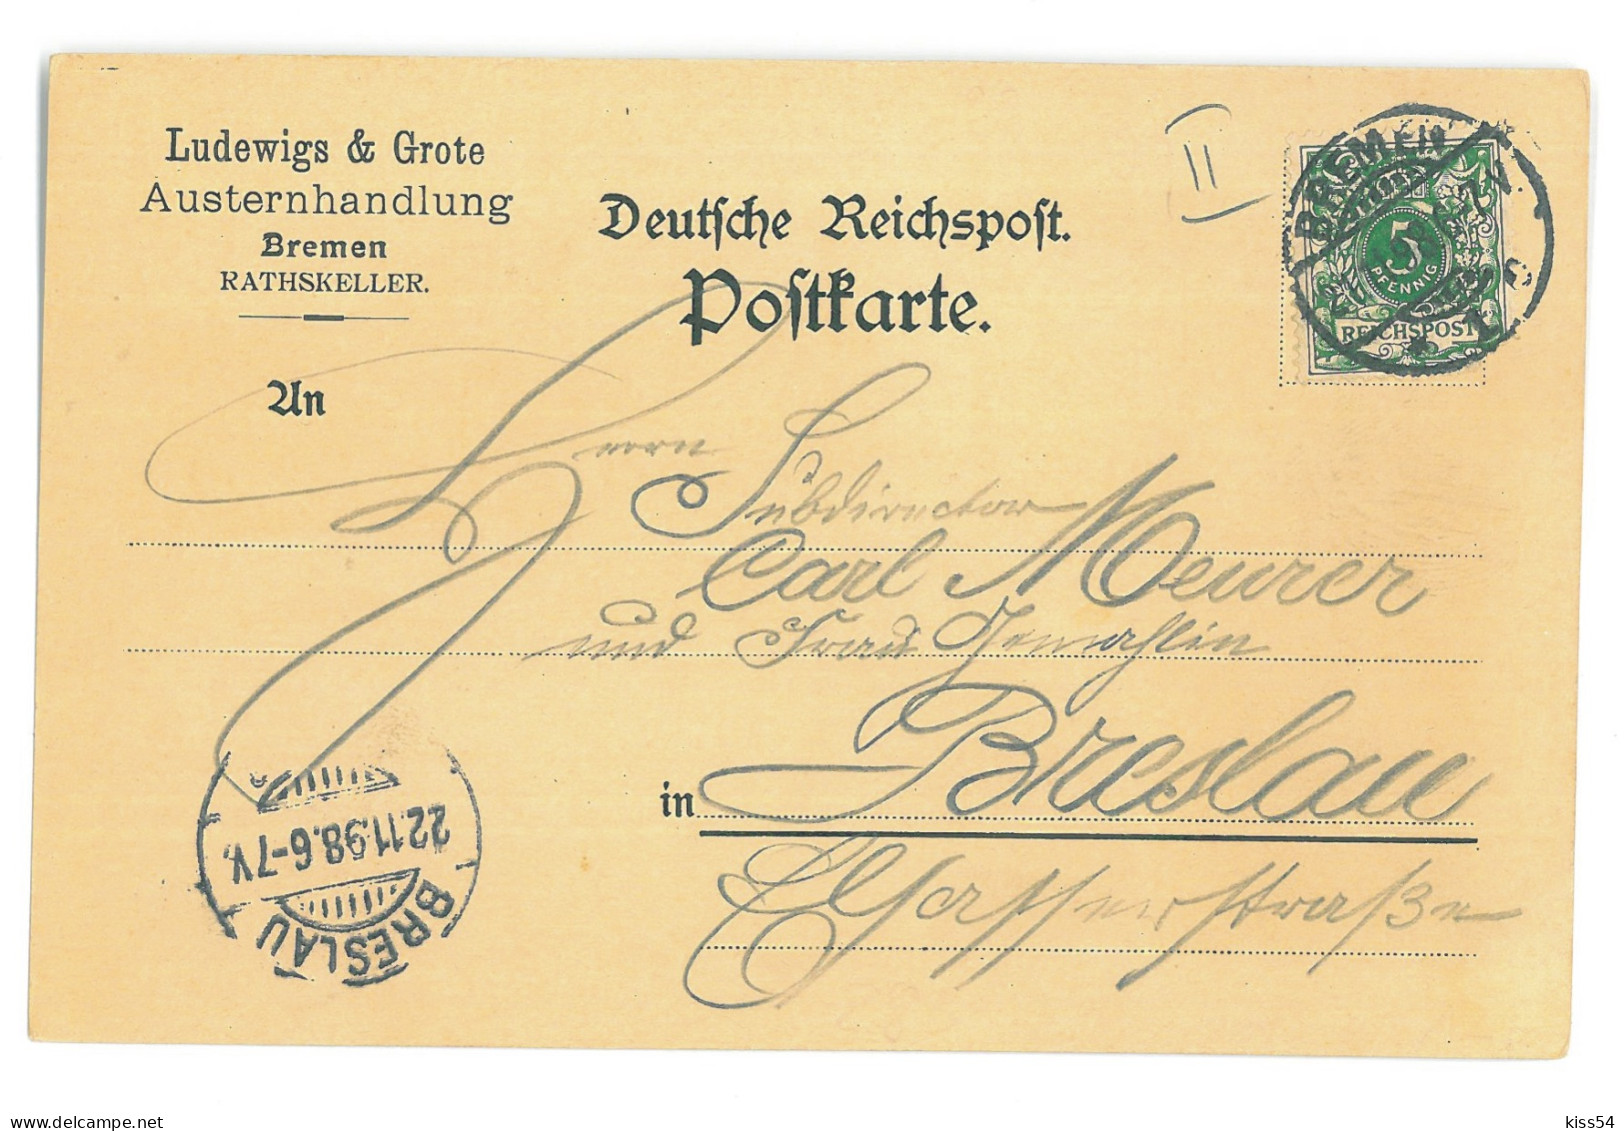 GER 05 - 16875 BREMEN, Litho, Germany - Old Postcard - Used - 1898 - Bremen